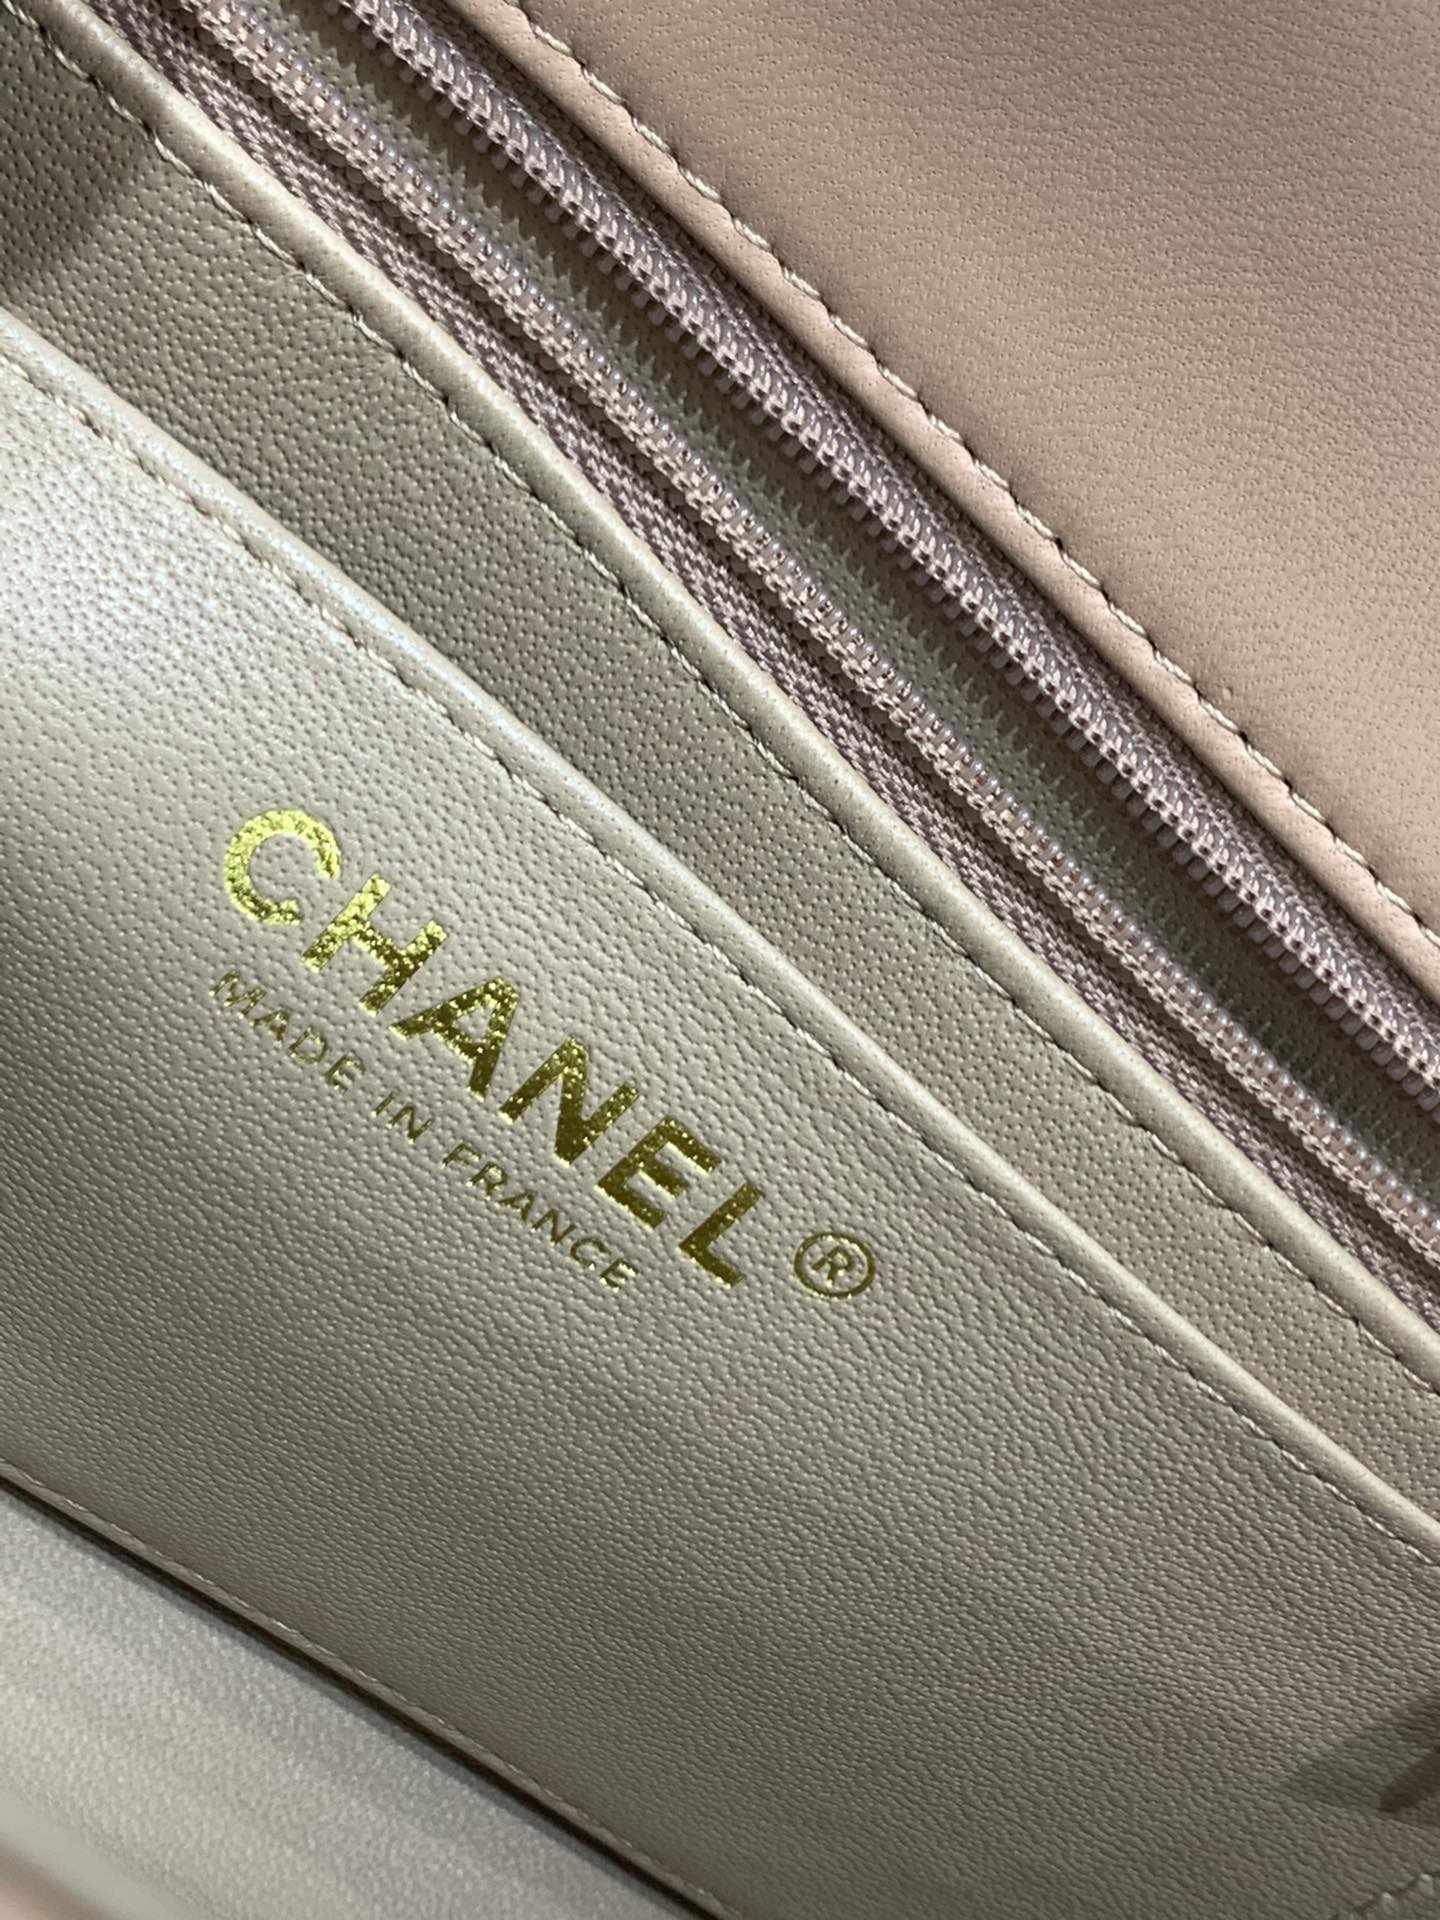 升级版 2021春夏新品 全钢浅金金属～带芯片  【真品级】Chanel CF 20  原厂bodin joyeux羔羊皮 ️奶茶色  少量现货